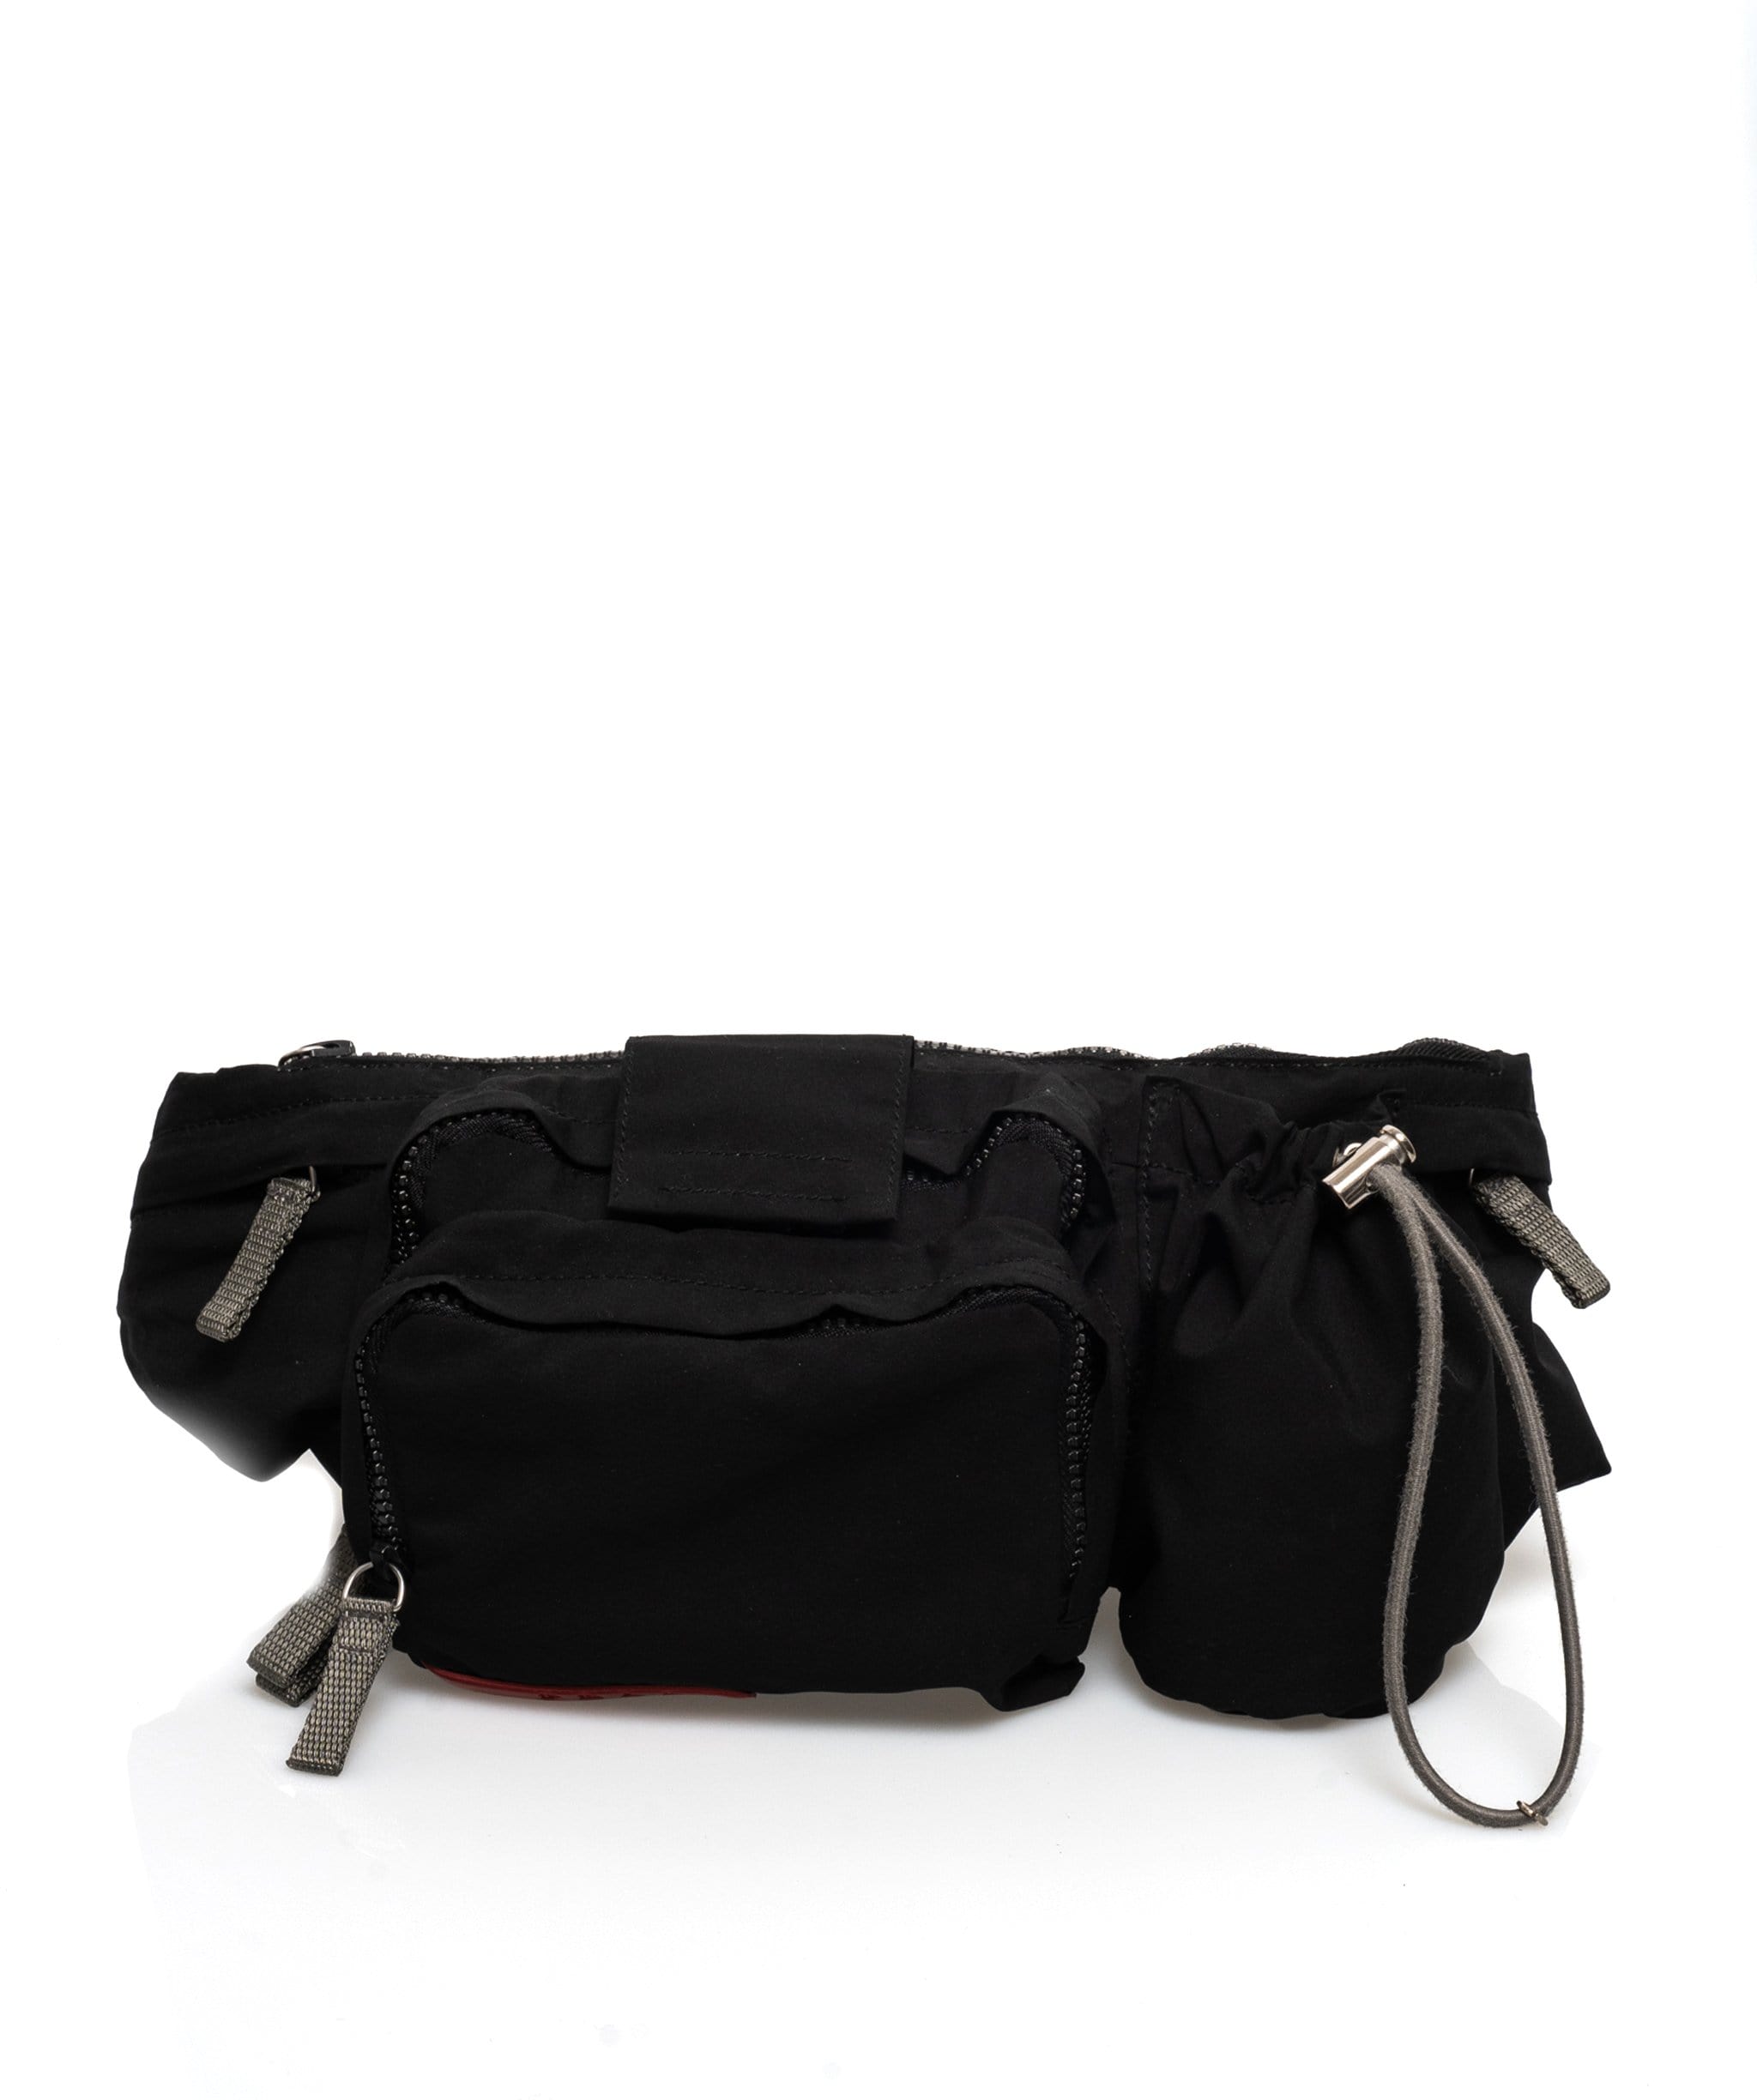 Prada Prada Sports Nylon Waist Bag Belt - AR3386